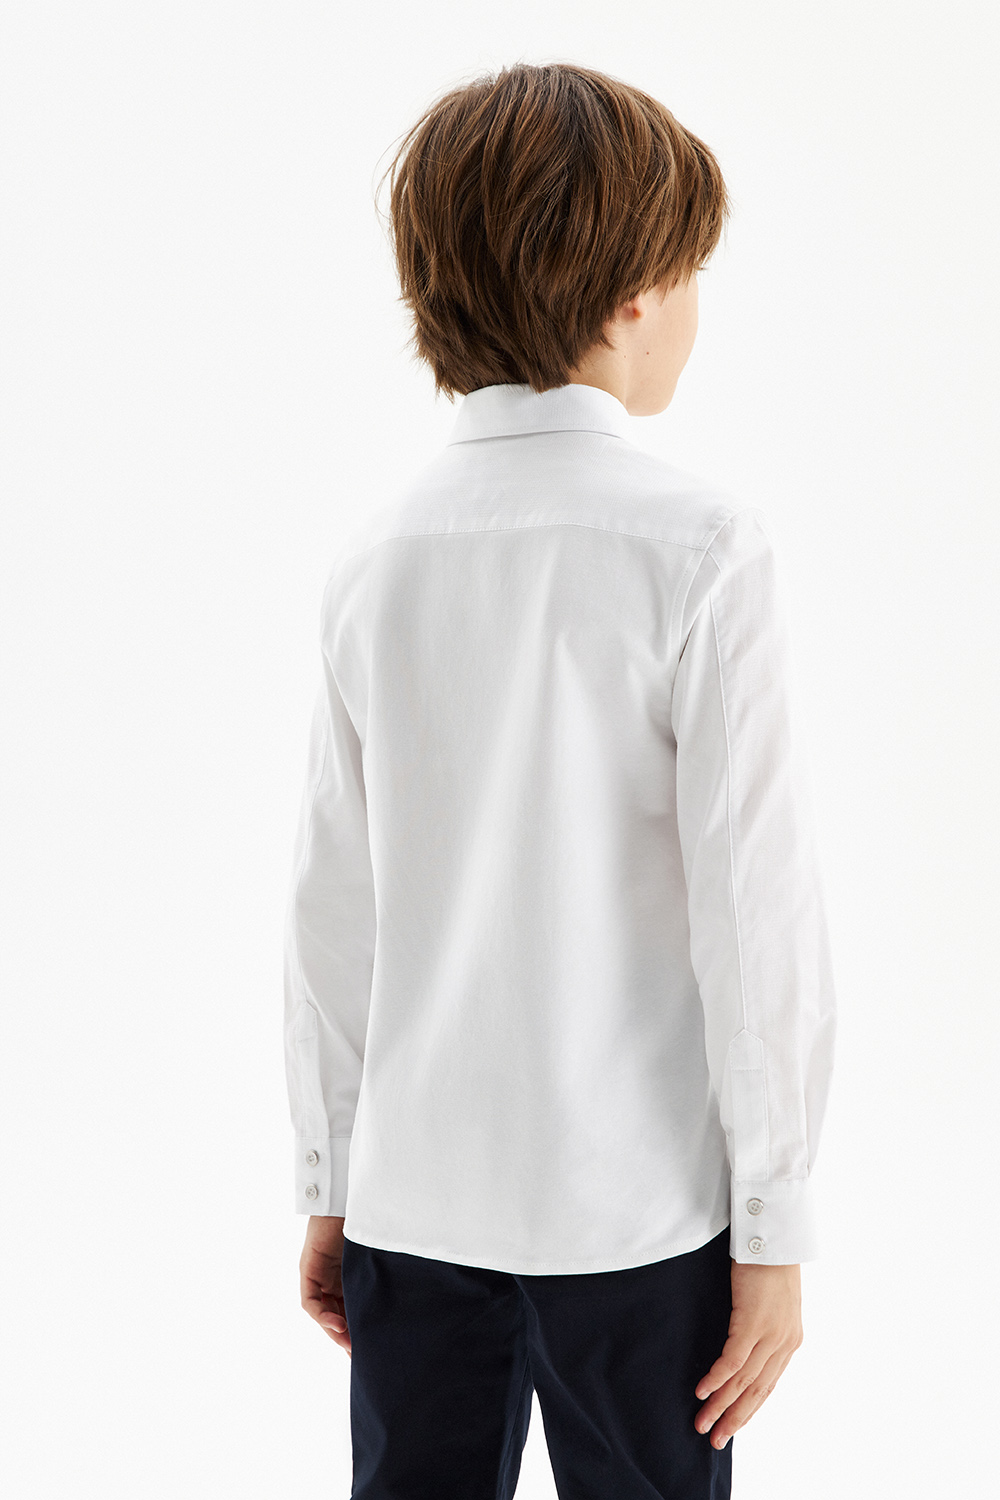 Хлопковая сорочка Comfort с трикотажной спинкой на кнопках (SSFSB-328-14855-219) Silver Spoon